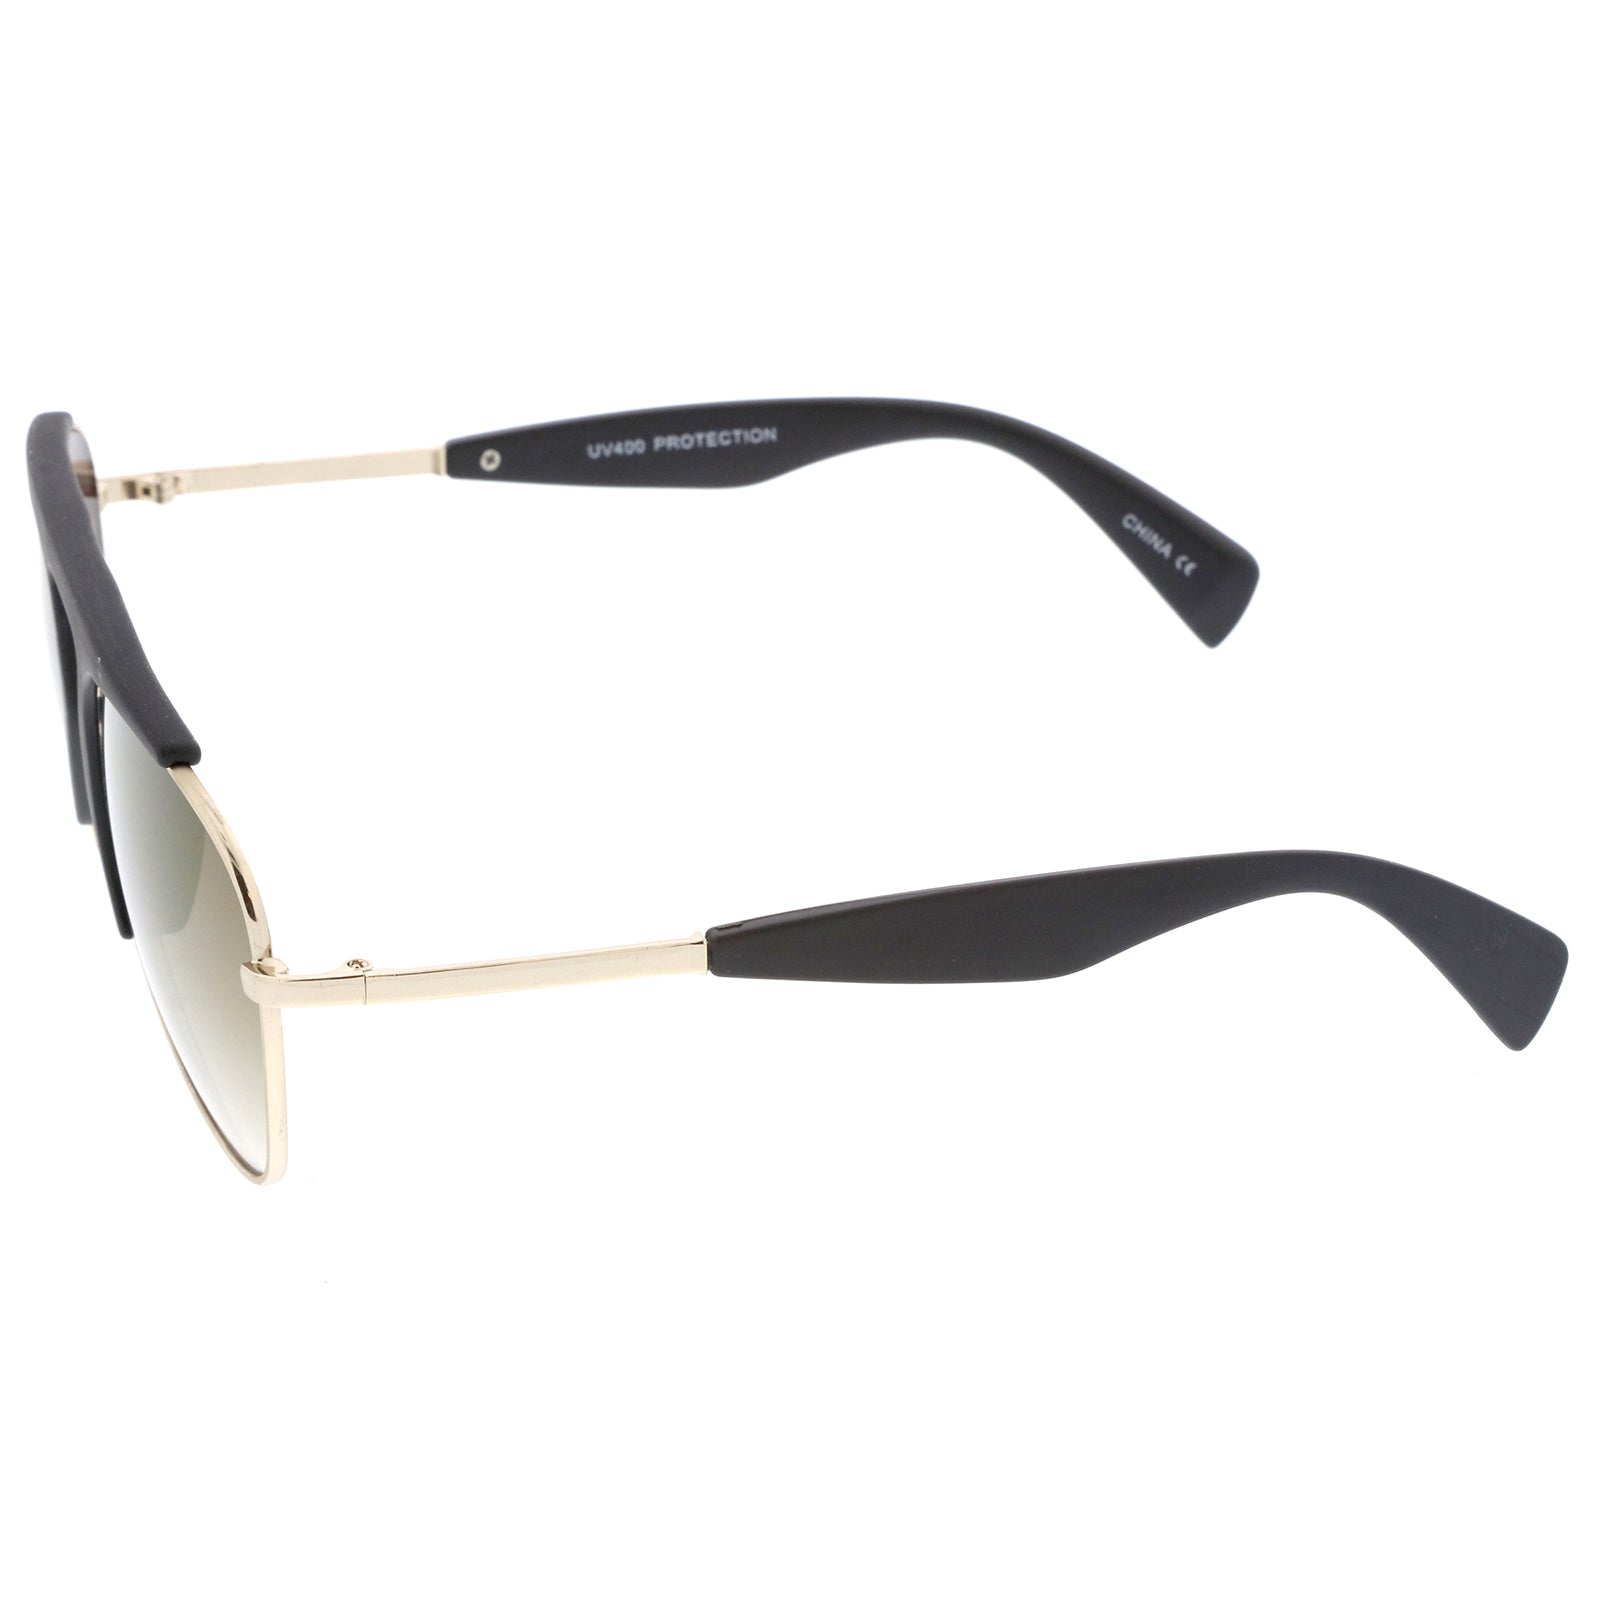 Prada Women's Fashion 50mm Matte White Marble Sunglasses